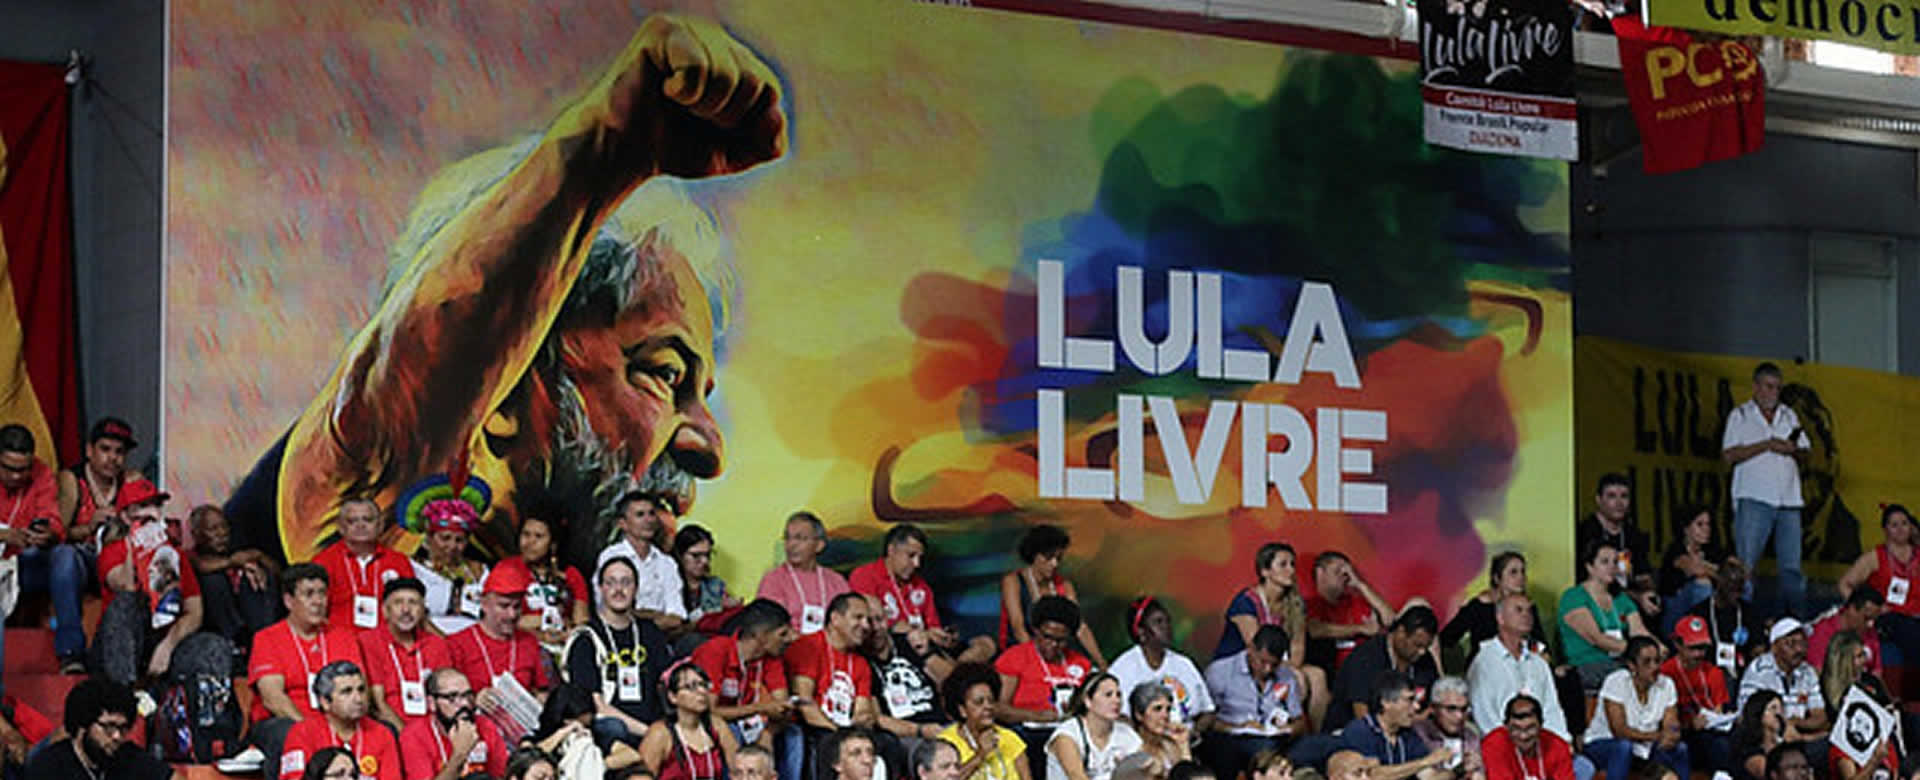 Exigen la inmediata liberación de Lula tras fallo de la corte en Brasil